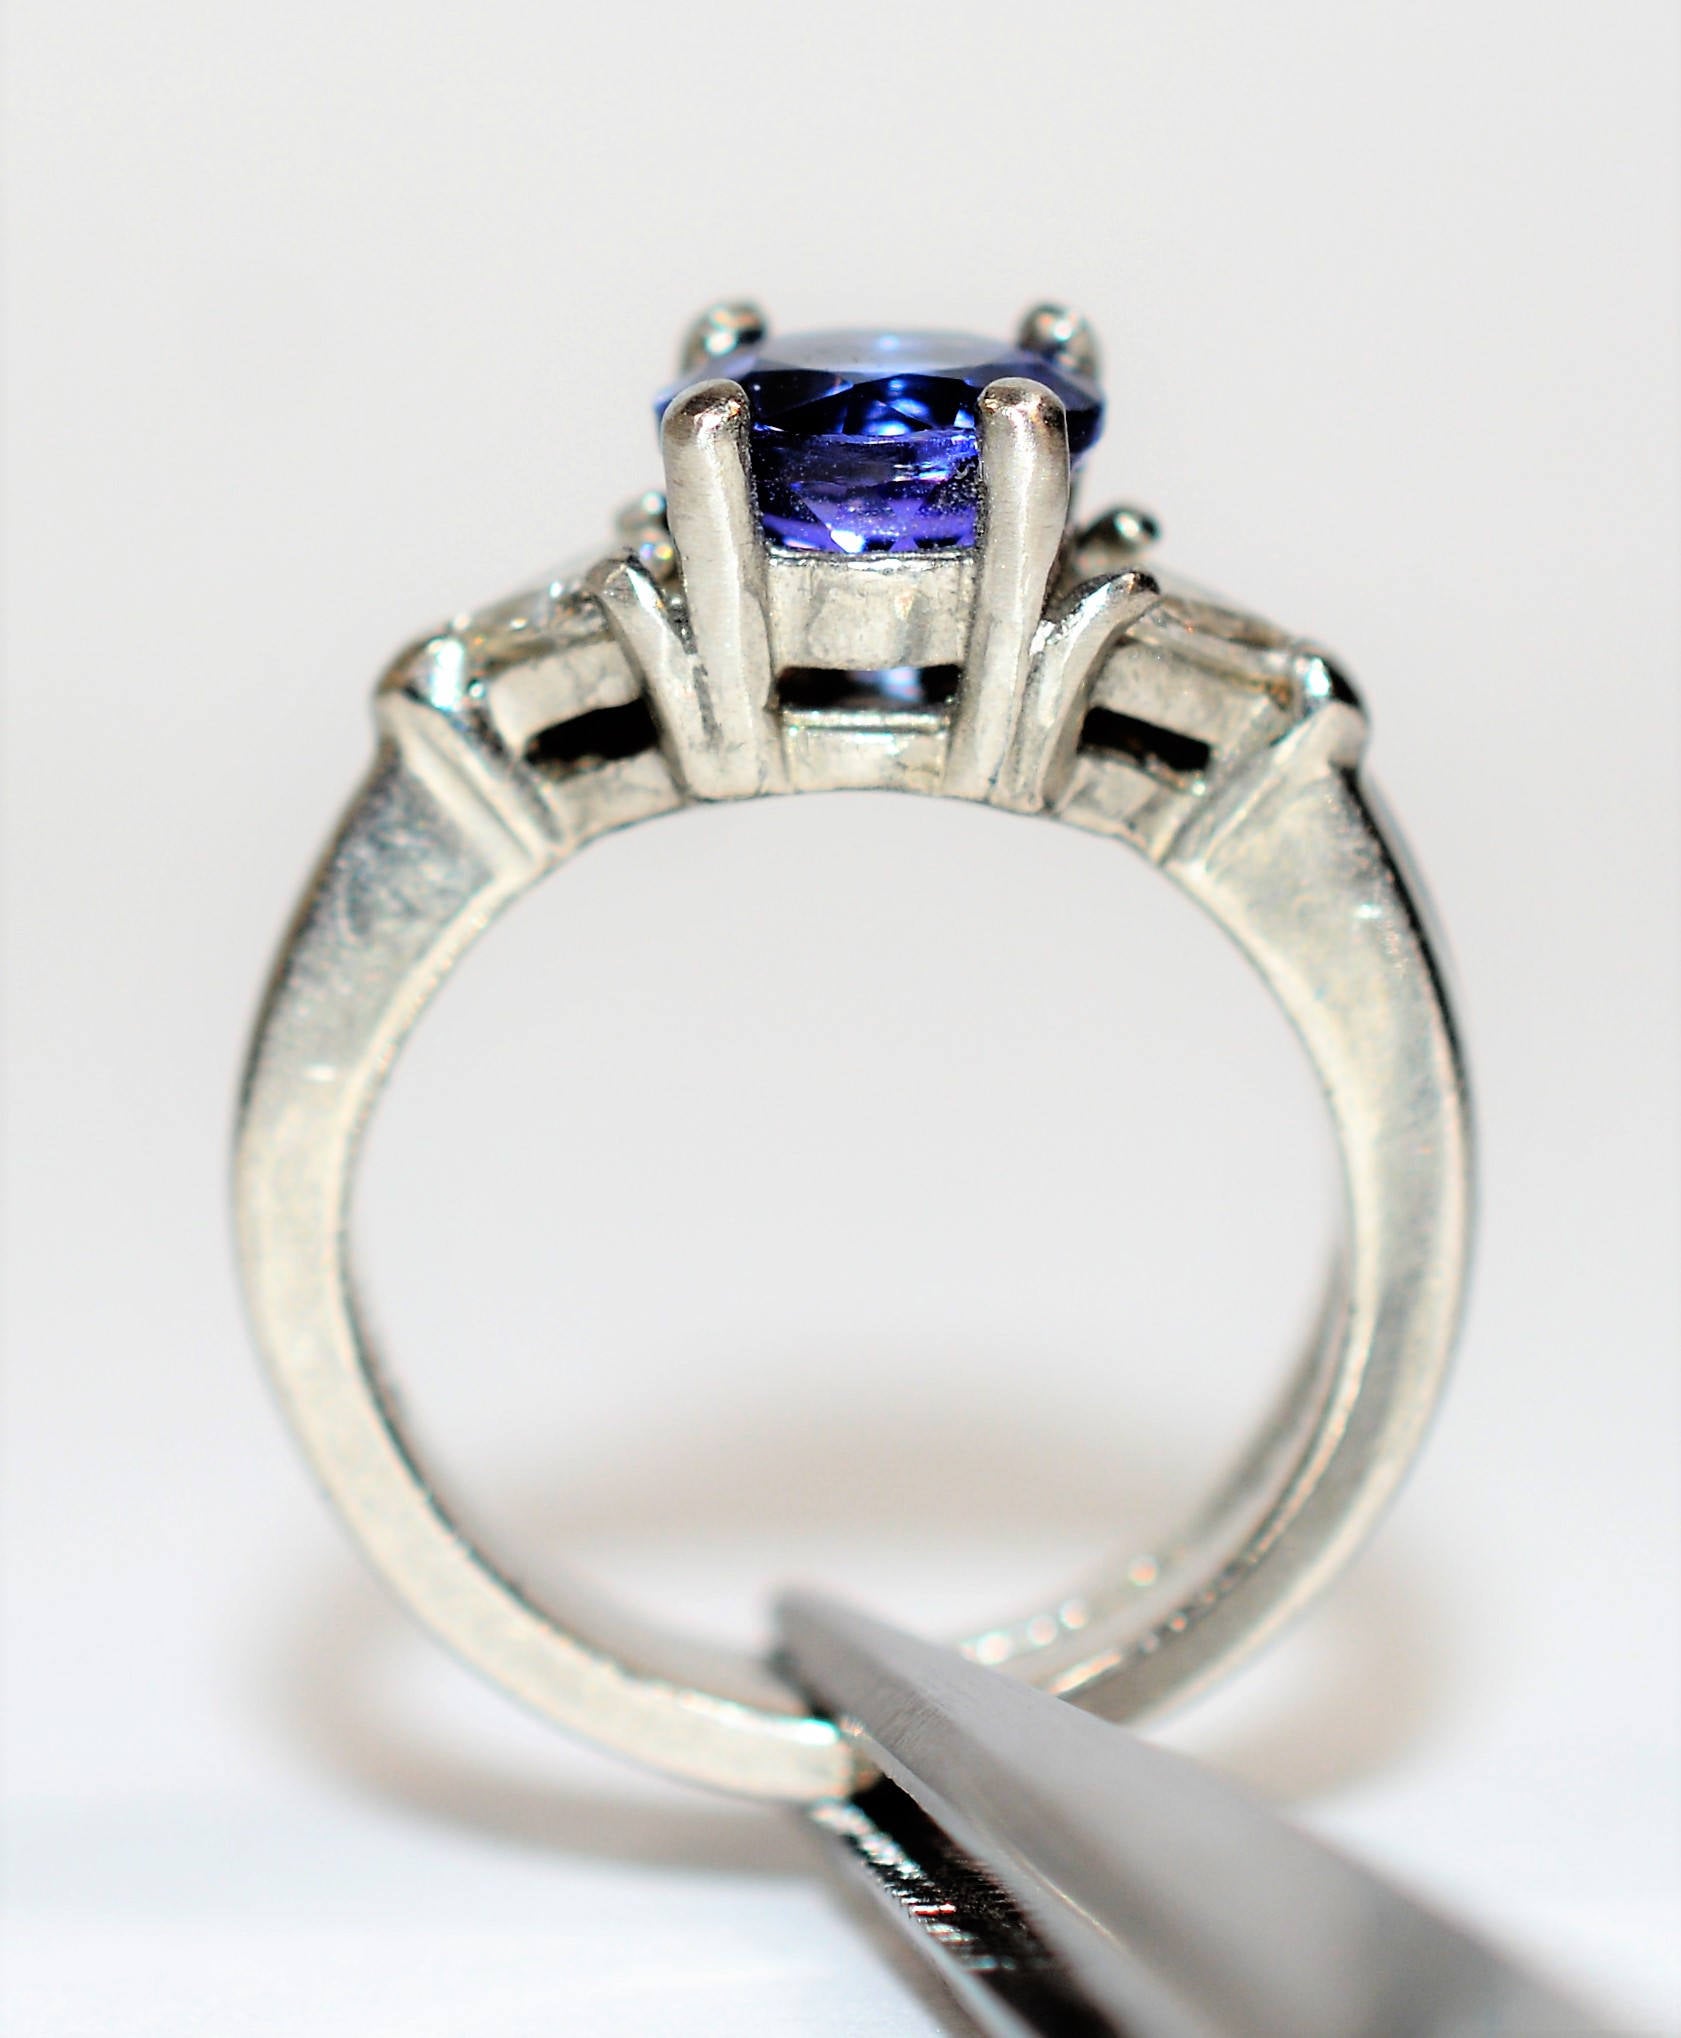 Natural D’Block Tanzanite & Diamond Ring Wedding Bridal Set Solid Platinum 2.08tcw Gemstone Ring Engagement Ring Wedding Band Tanzanite Ring